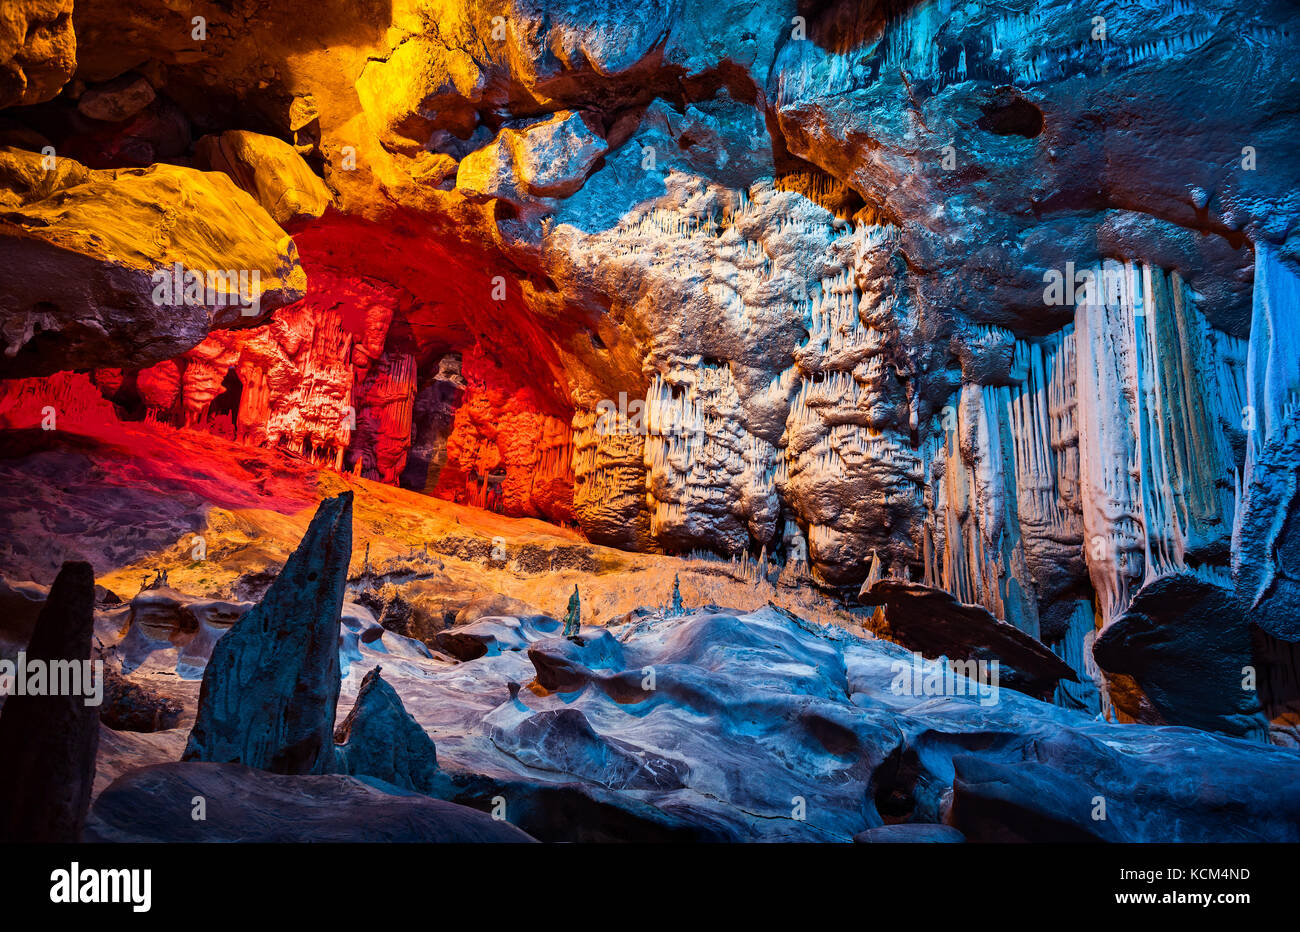 Cango Höhle, wundervolle Aussicht auf Stalaktiten in bunten helles Licht, wunderschöne natürliche Attraktion, herrliche Natur, touristischer Ort, historische Sehenswürdigkeit Stockfoto